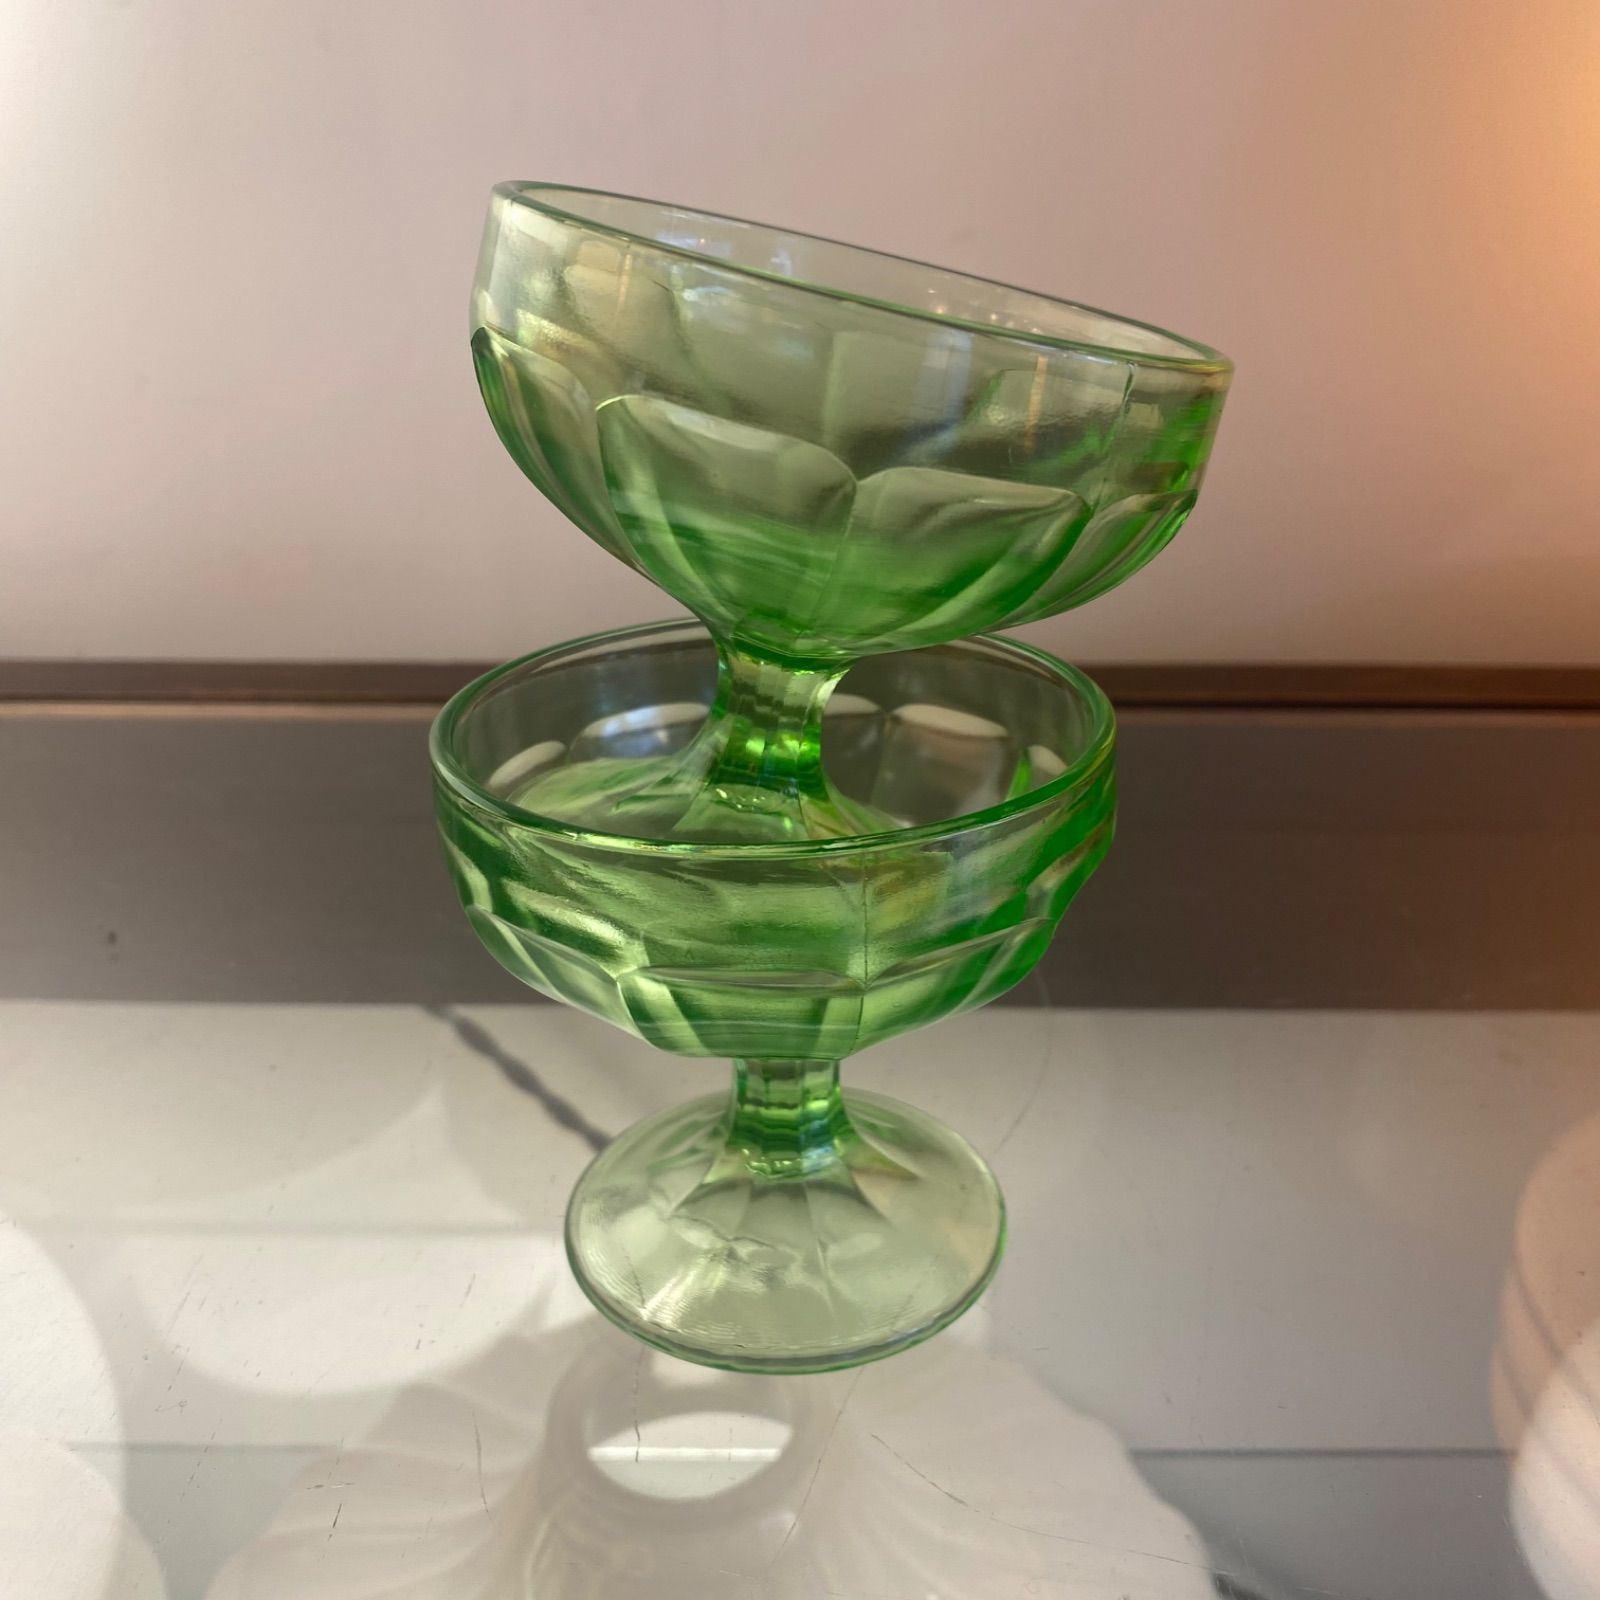 ウランガラス ディプレッションガラス グラス - 美術、工芸品